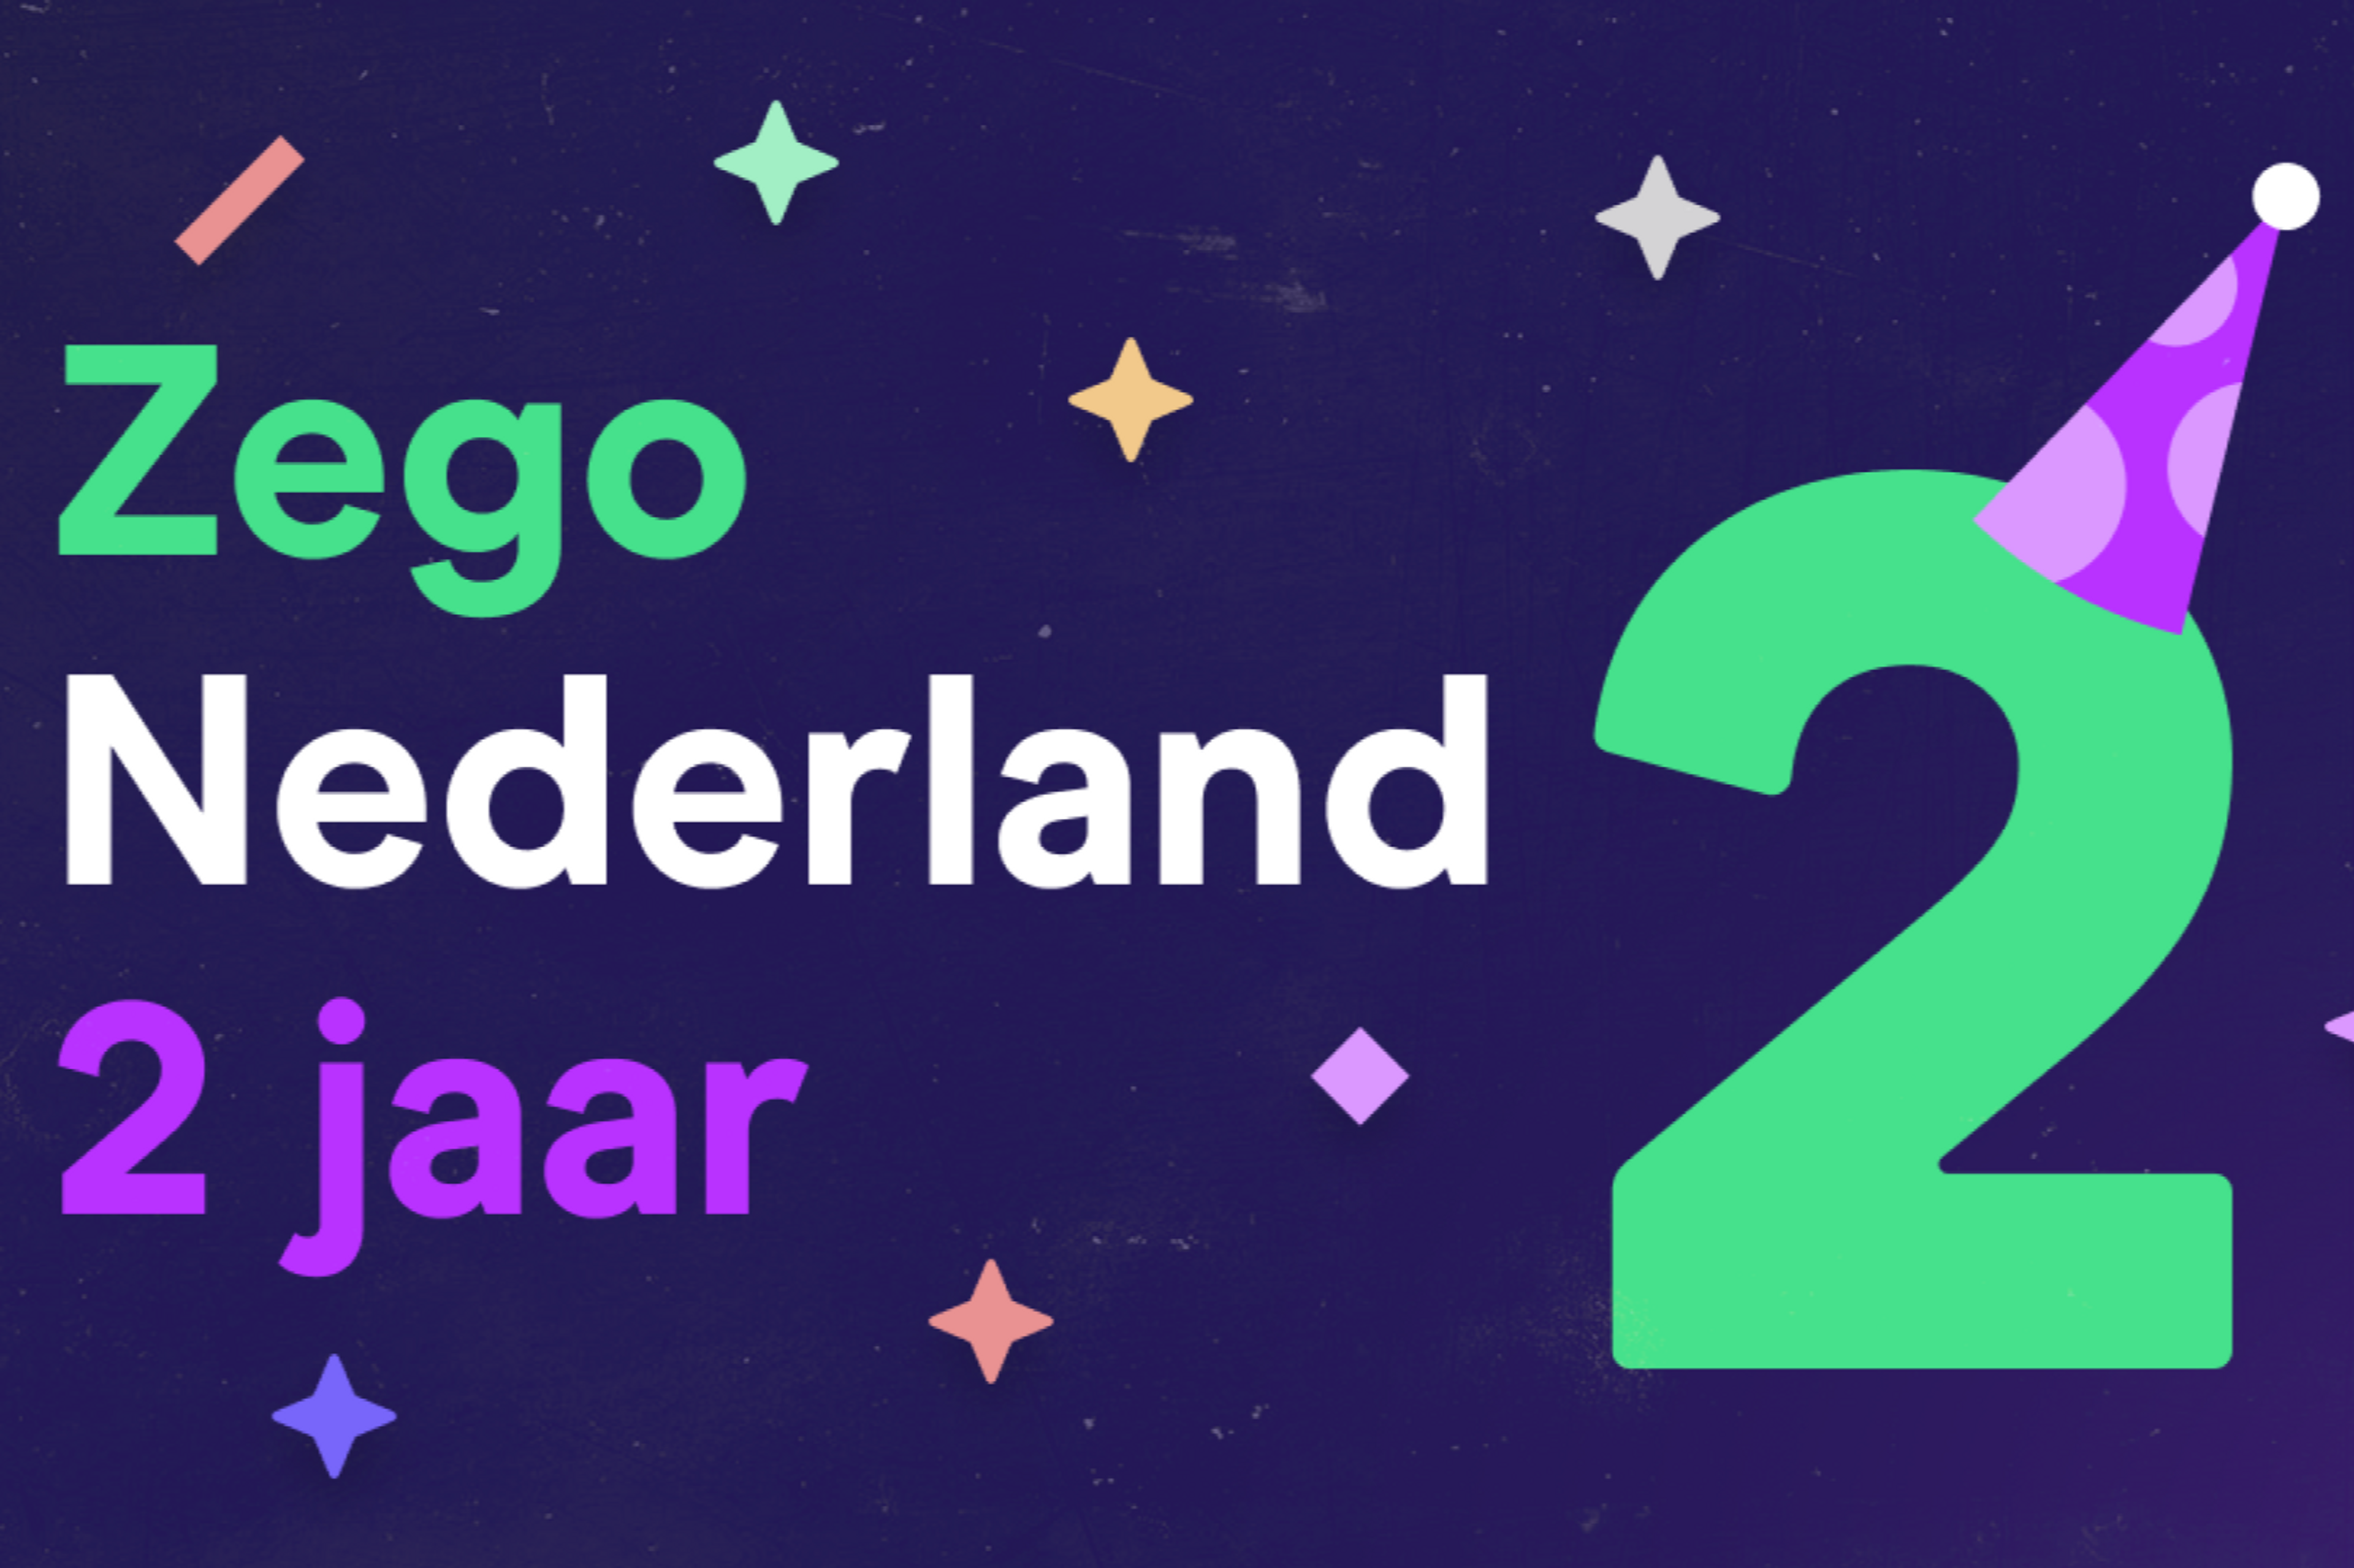 Zego Nederland 2 jaar! 